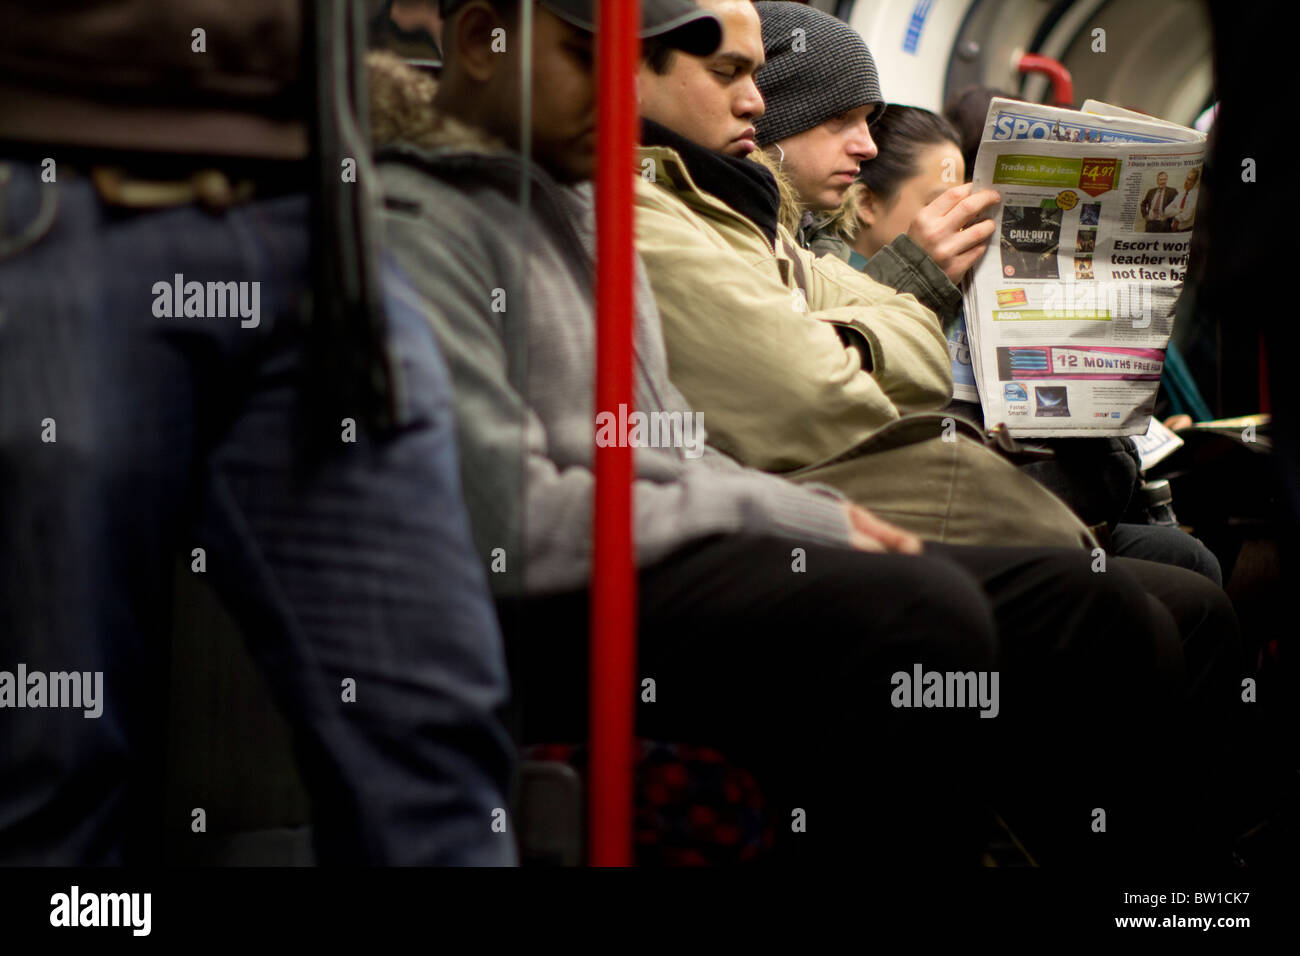 London Underground tube voyageurs passagers banlieusards, avec l'homme lisant le journal Métro Banque D'Images